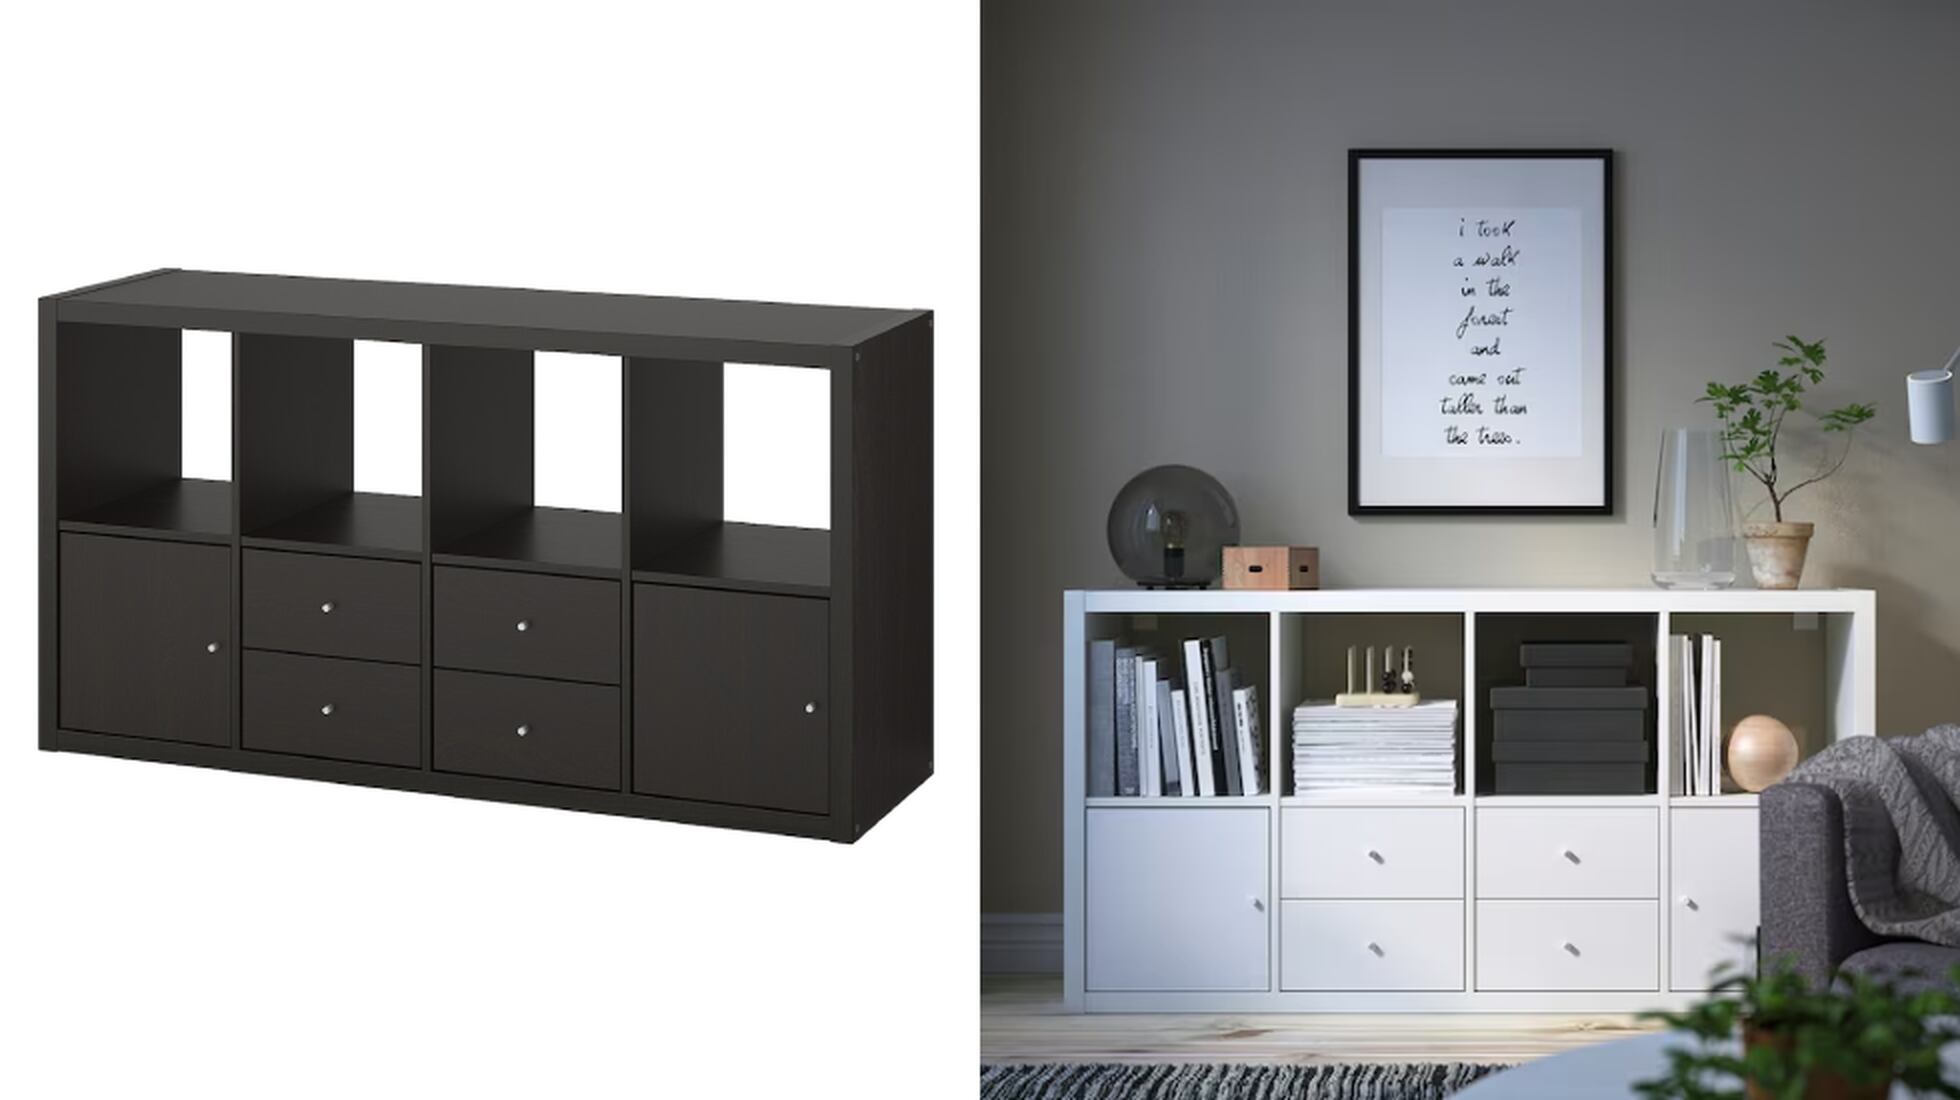 IKEA: Los 10 mejores muebles superventas para equipar tu dormitorio